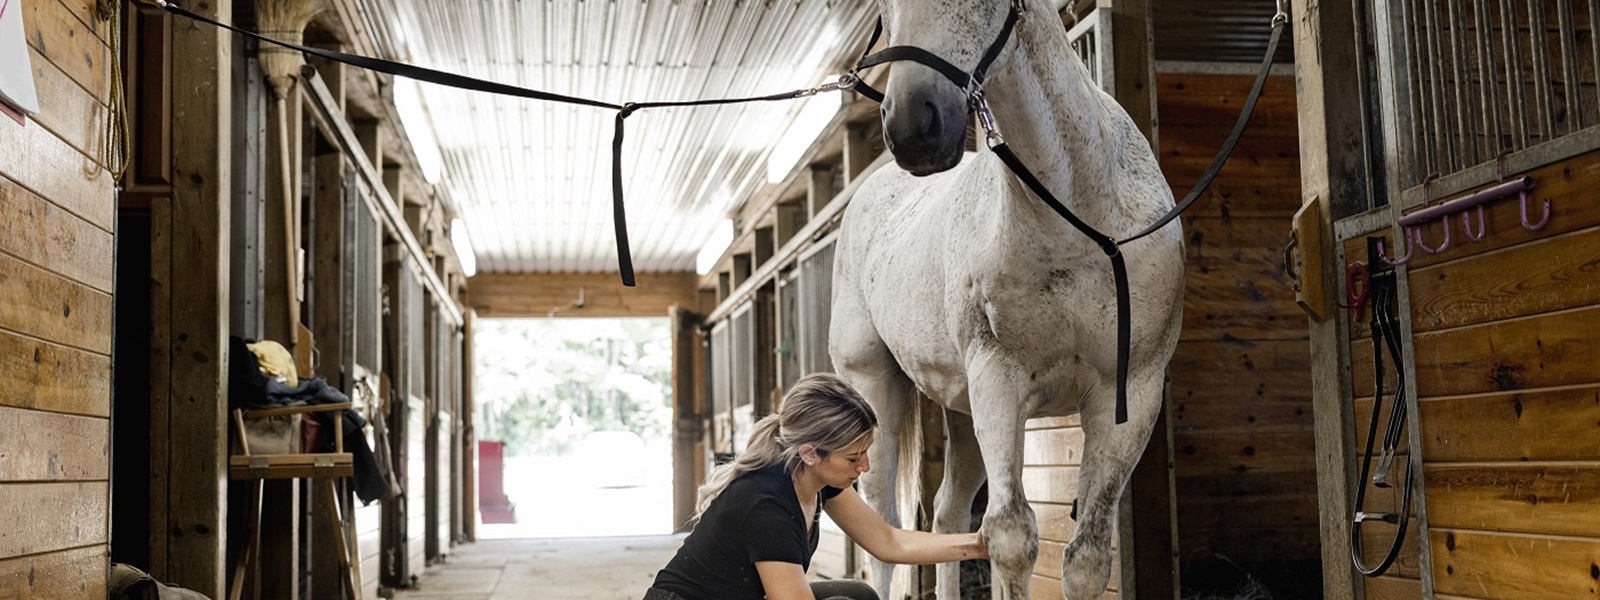 Female horse owner brushes her horse's hooves